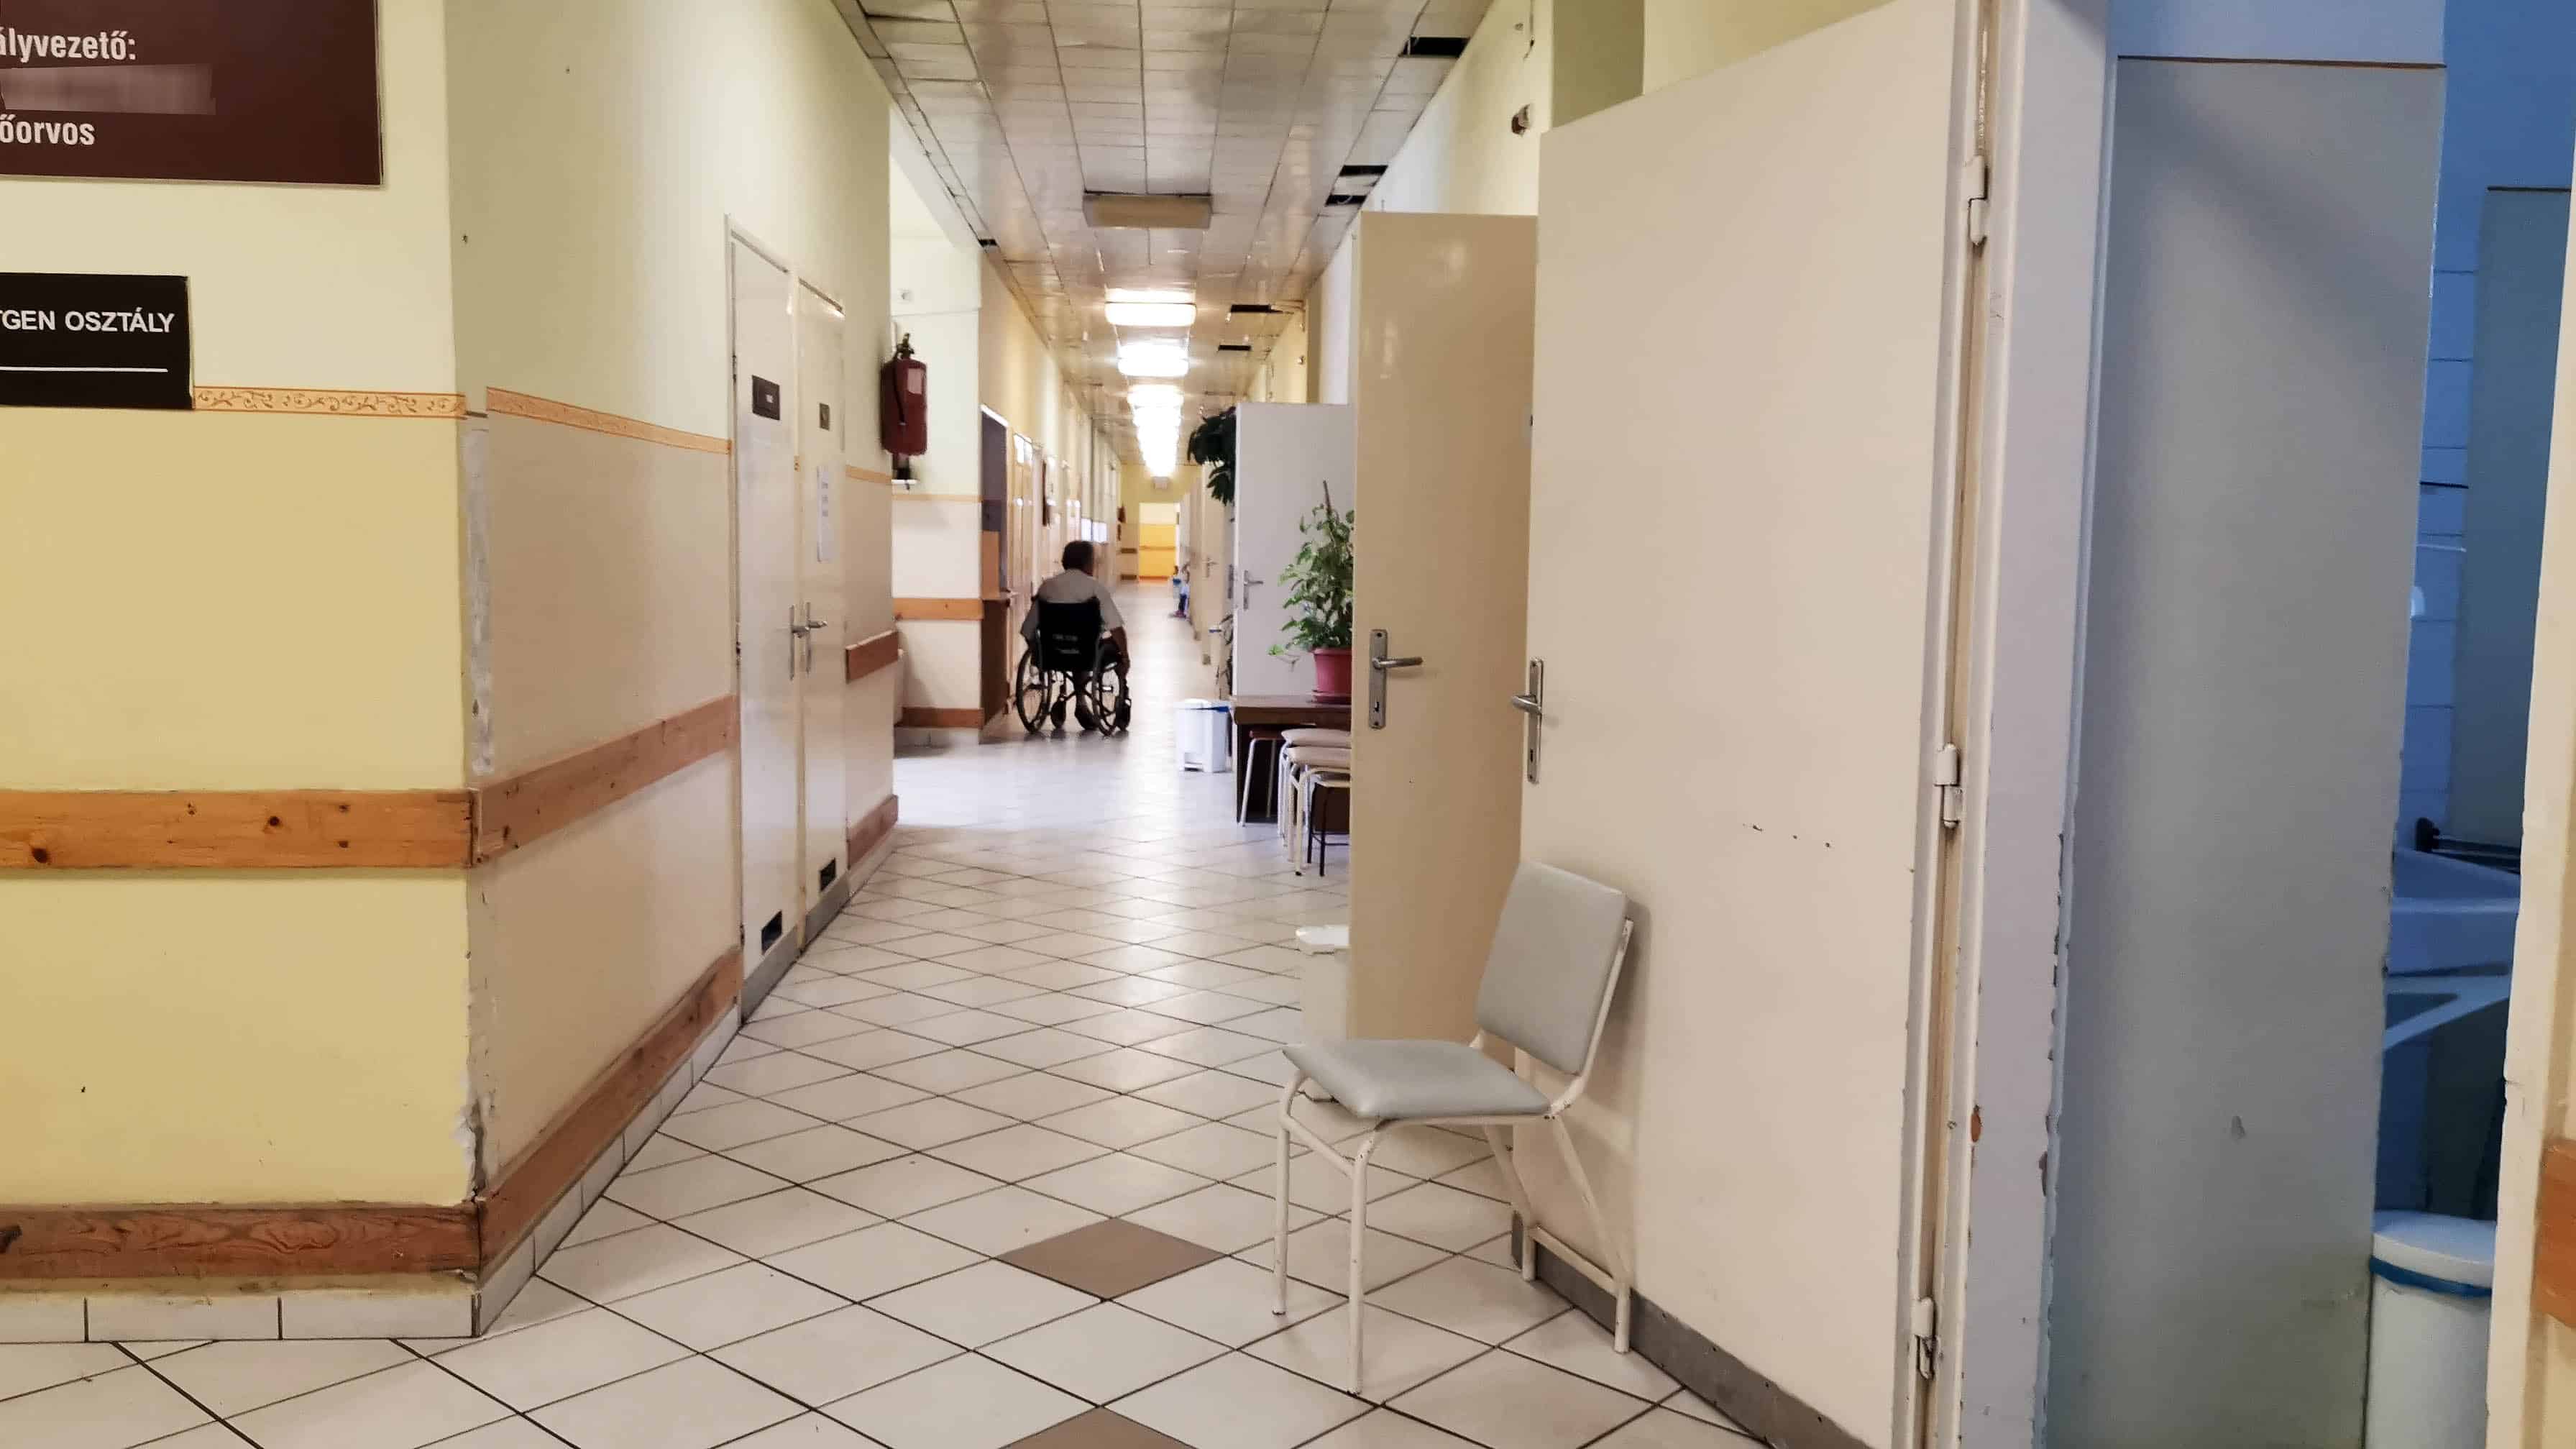 péterfy hospital Budapest Maďarský systém zdravotní péče